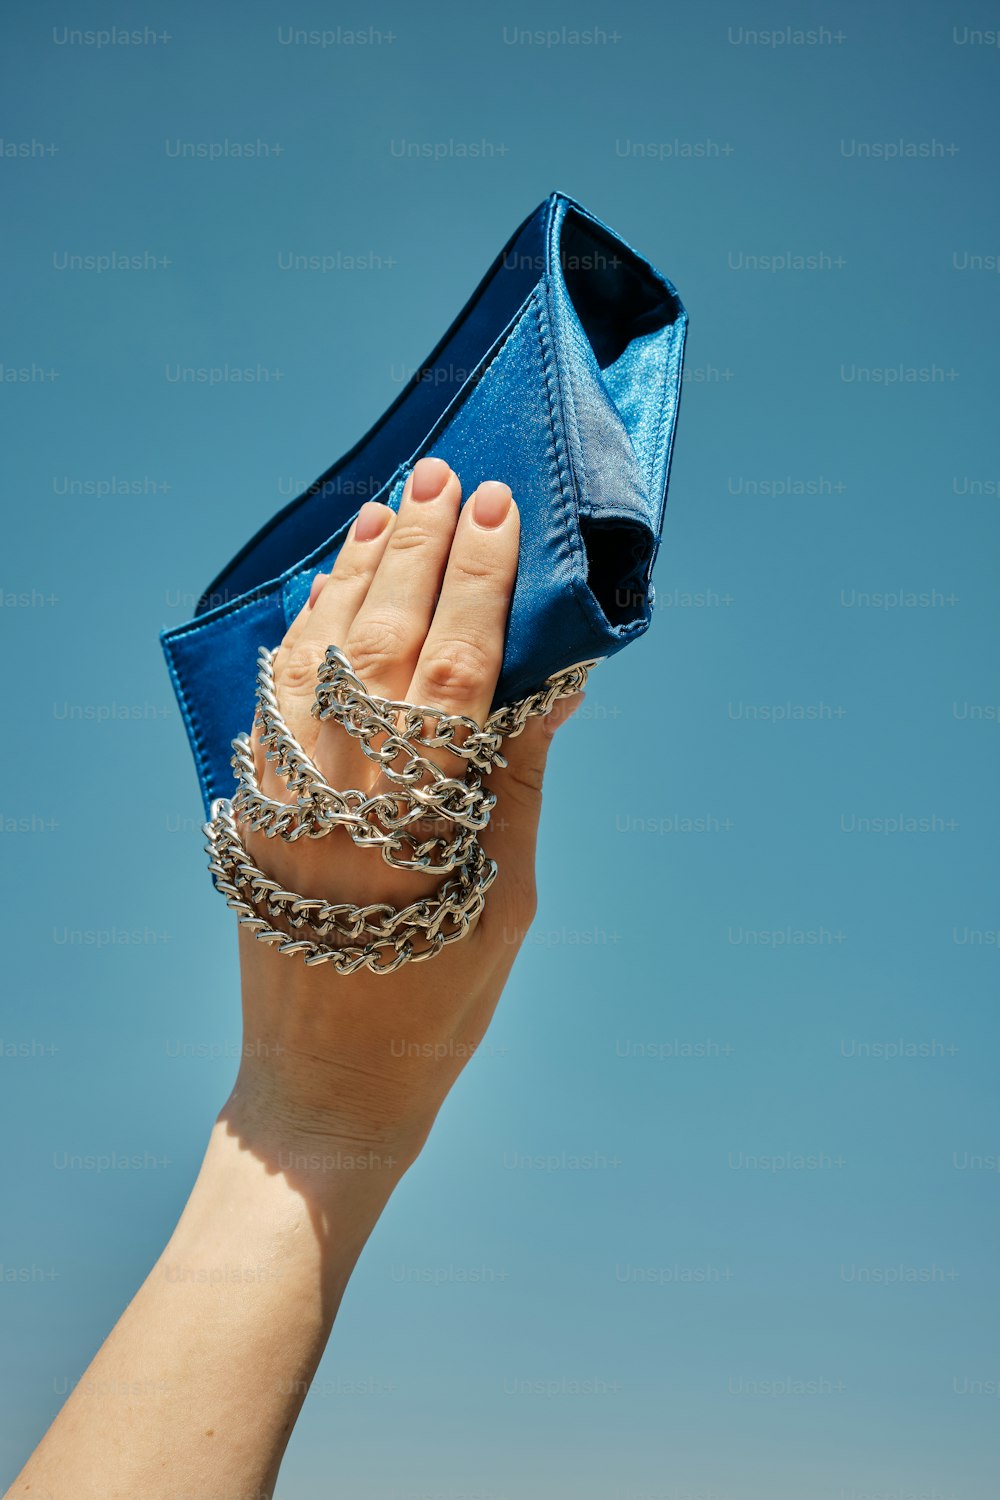 La mano de una mujer sosteniendo un bolso azul